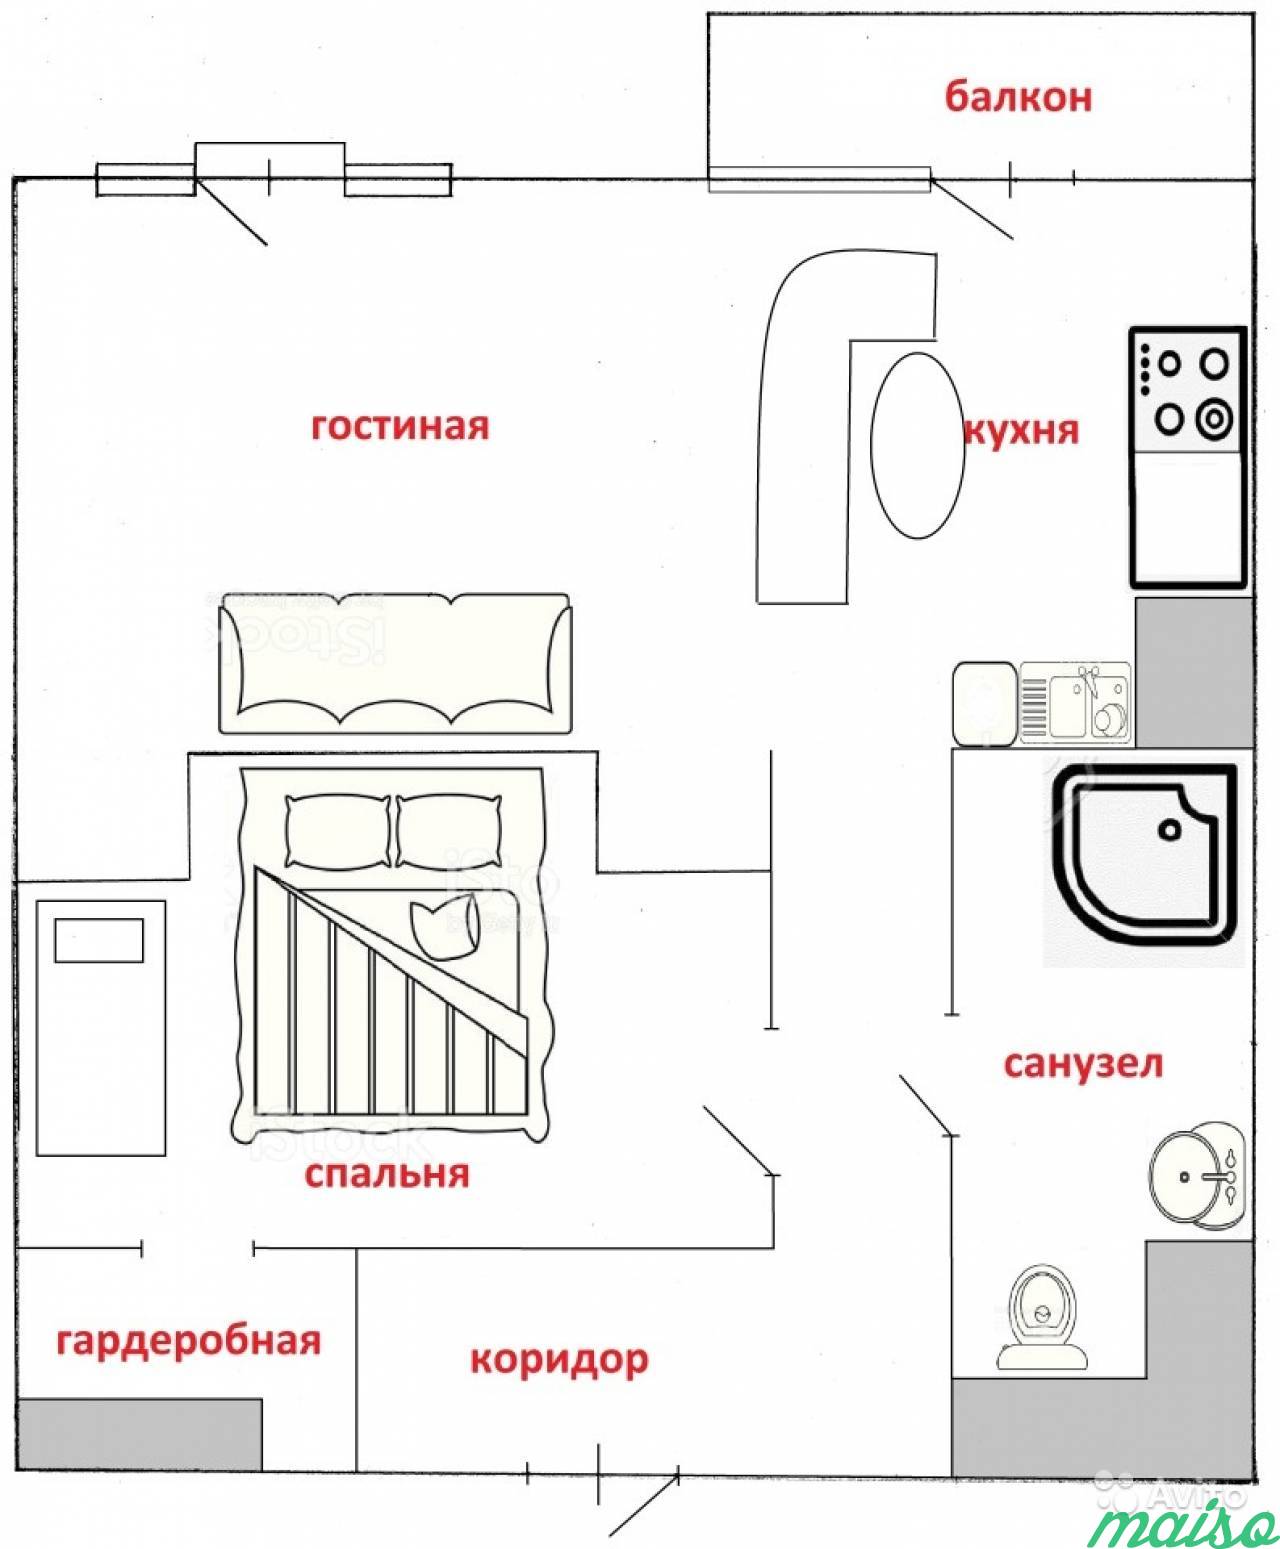 2-к квартира, 45 м², 25/25 эт. в Санкт-Петербурге. Фото 2